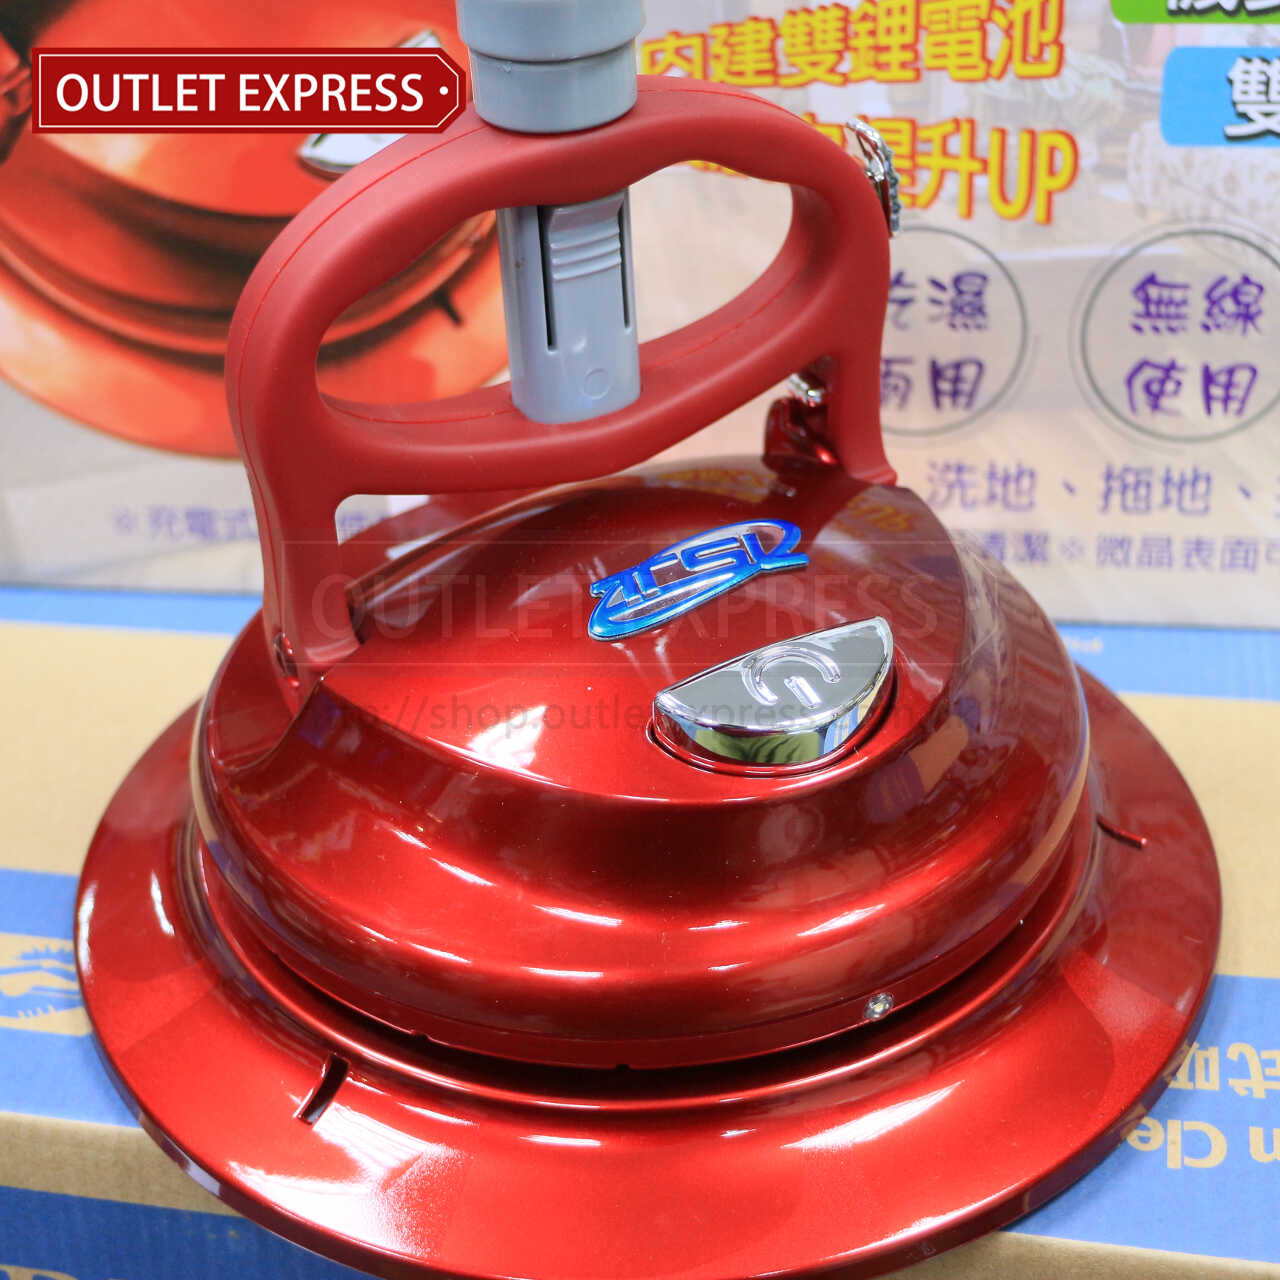 巧霸王 TSL-112第三代多功能無線電動清潔機 - Outlet Express HK生活百貨城實拍相片